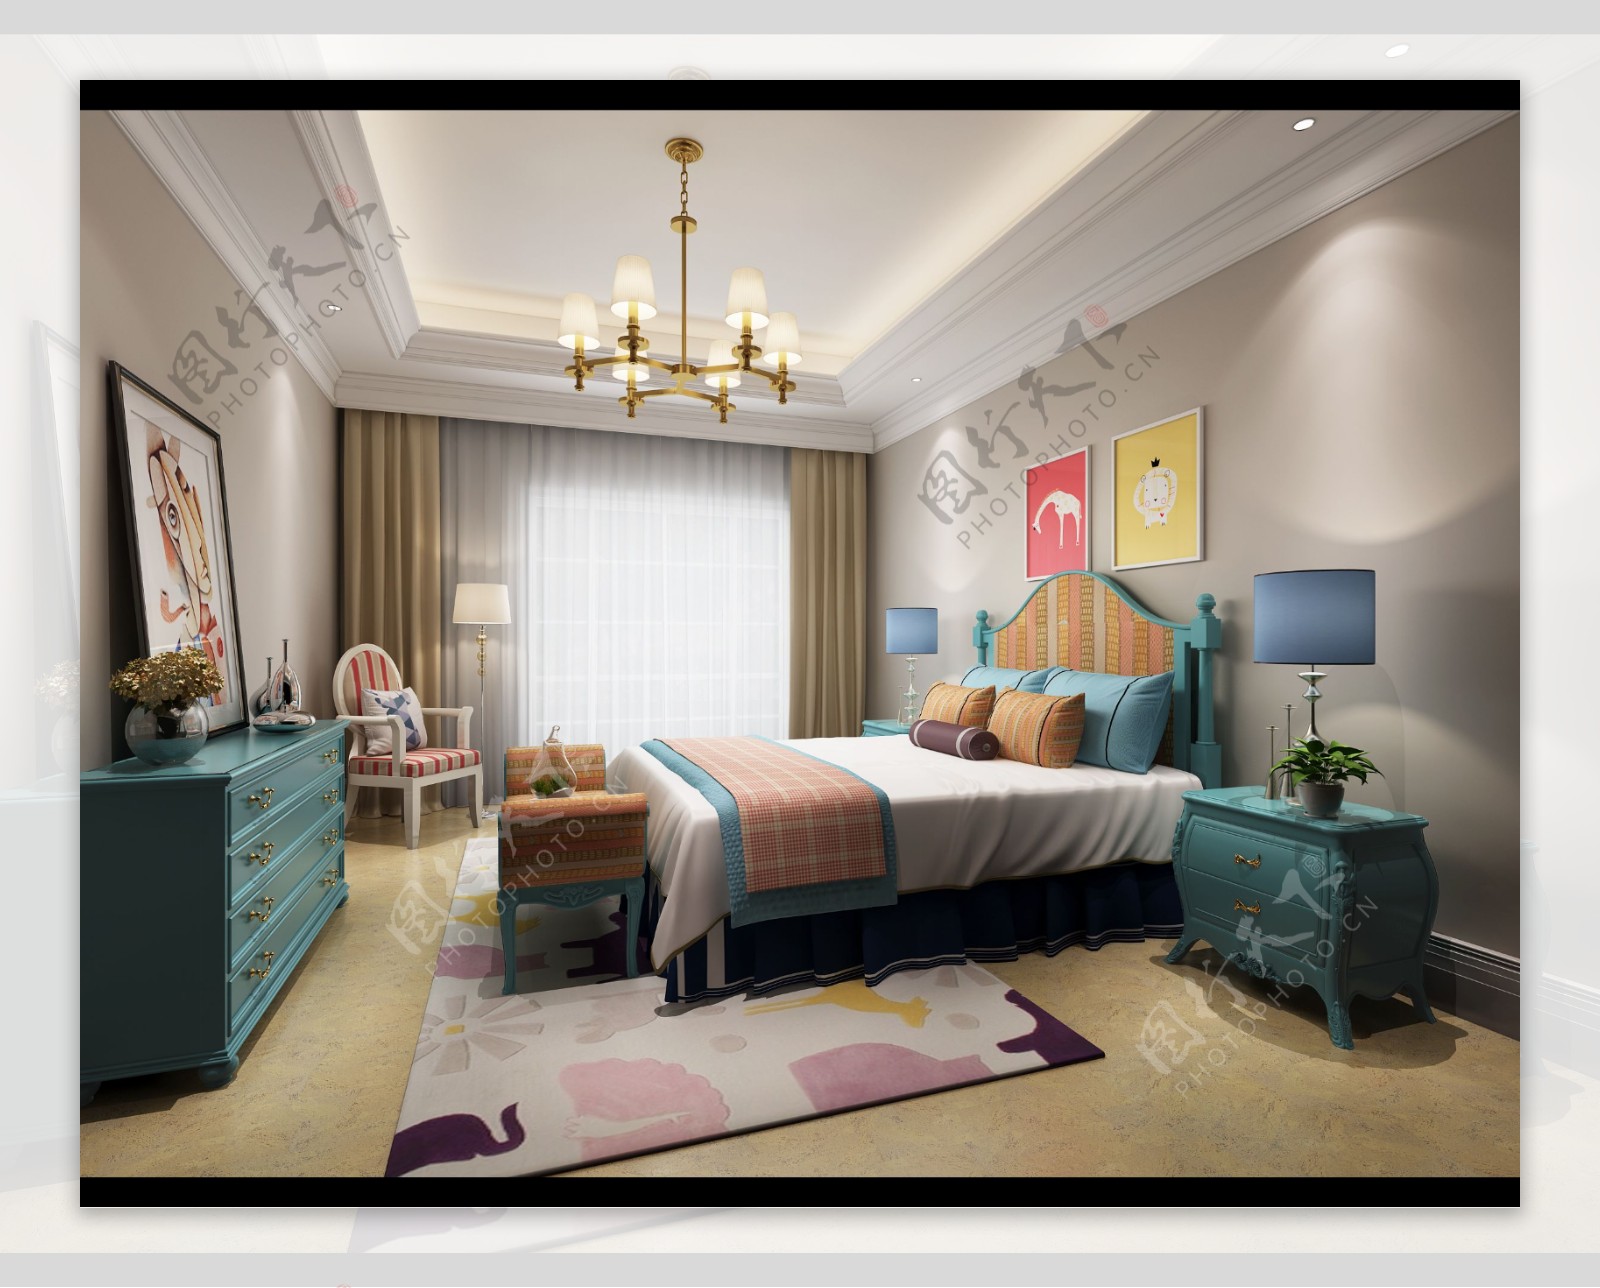 美式清新卧室水蓝色家具室内装修效果图